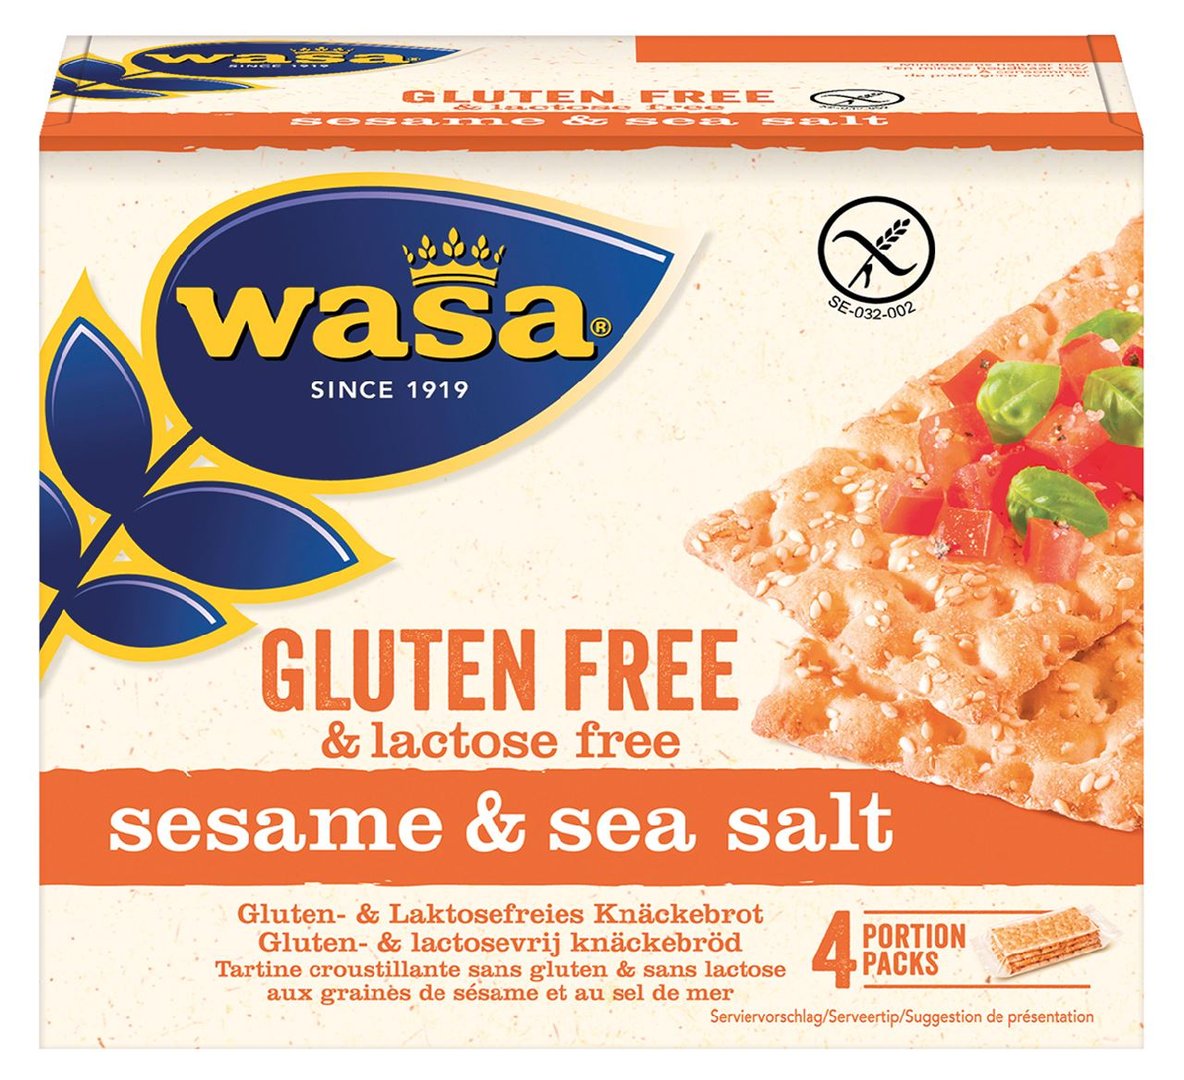 Wasa - Knäckebrot glutenfrei mit Sesam & Sea Salt - 1 x 240 g